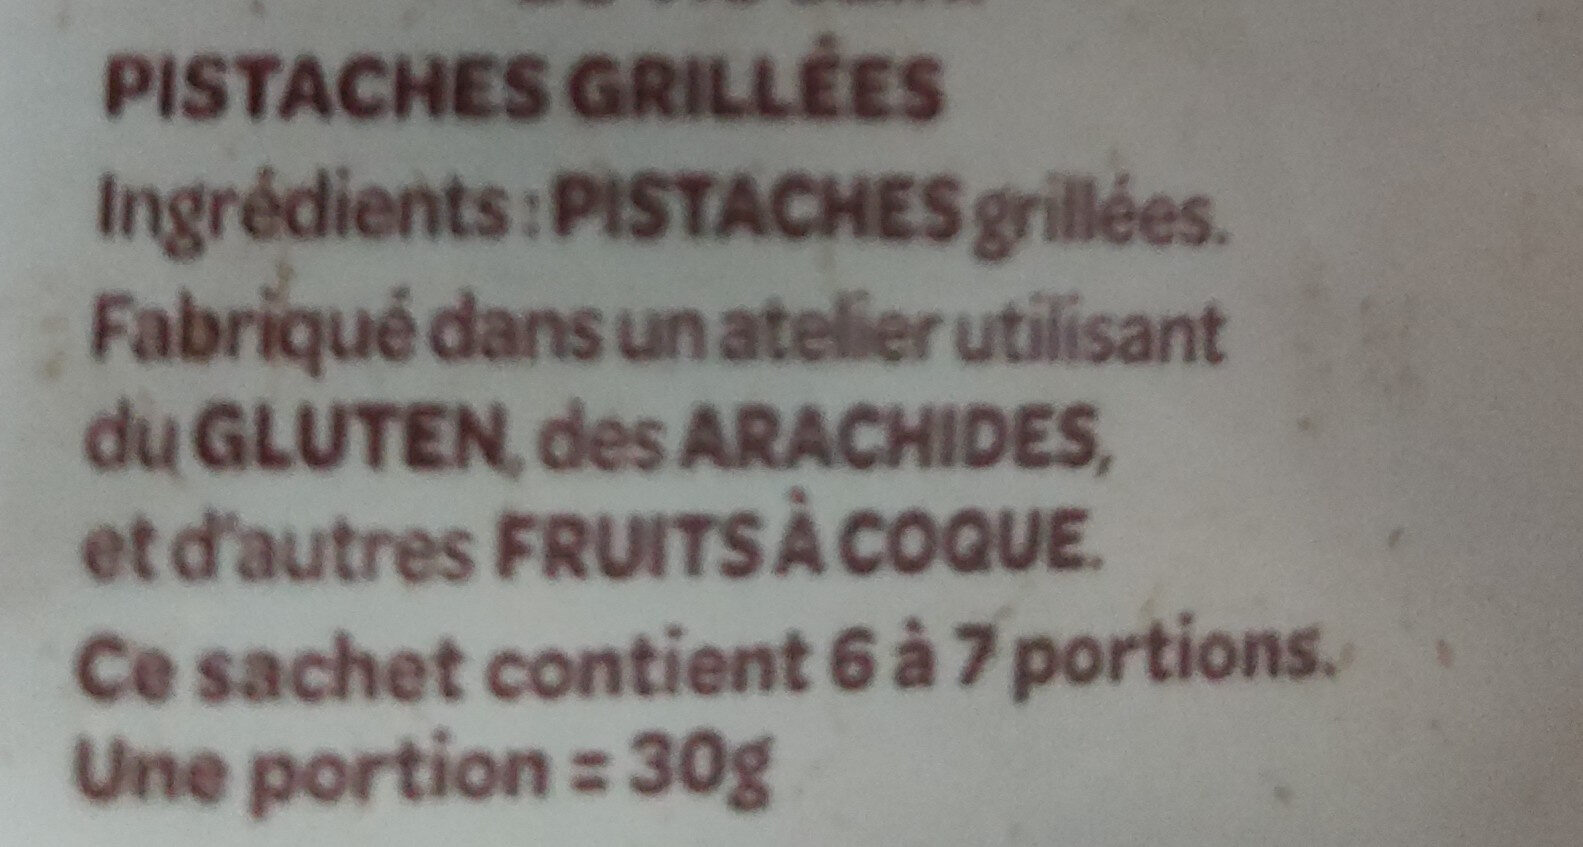 Pistaches grillées - Ingredients - fr